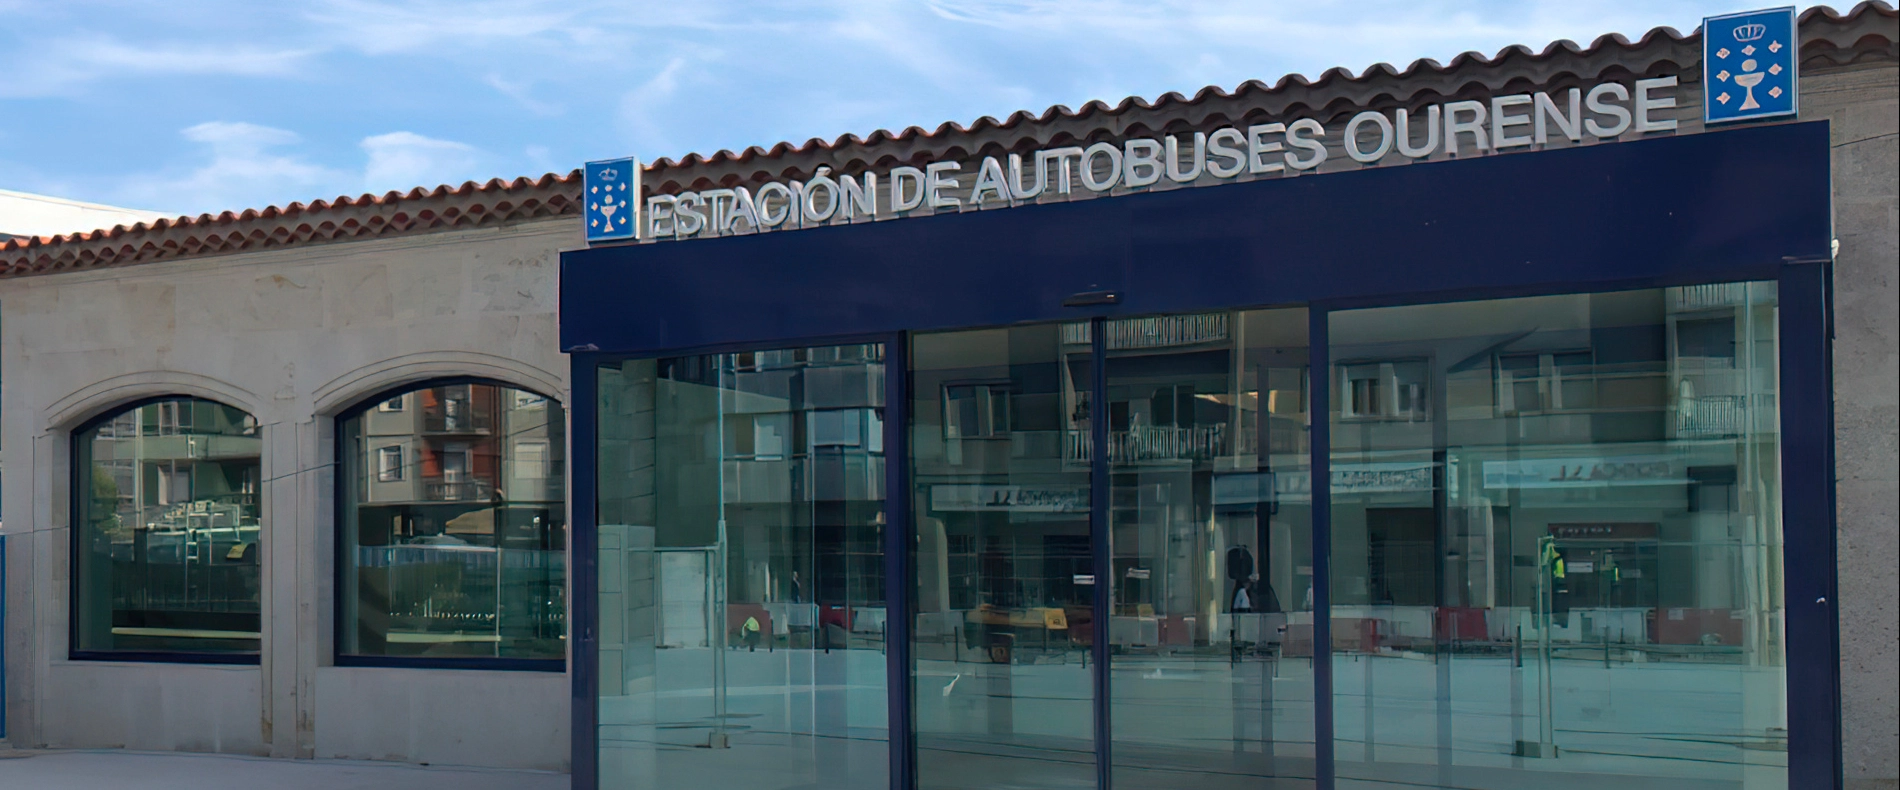 Die VACANTE Sitzbank am Busbahnhof Ourense